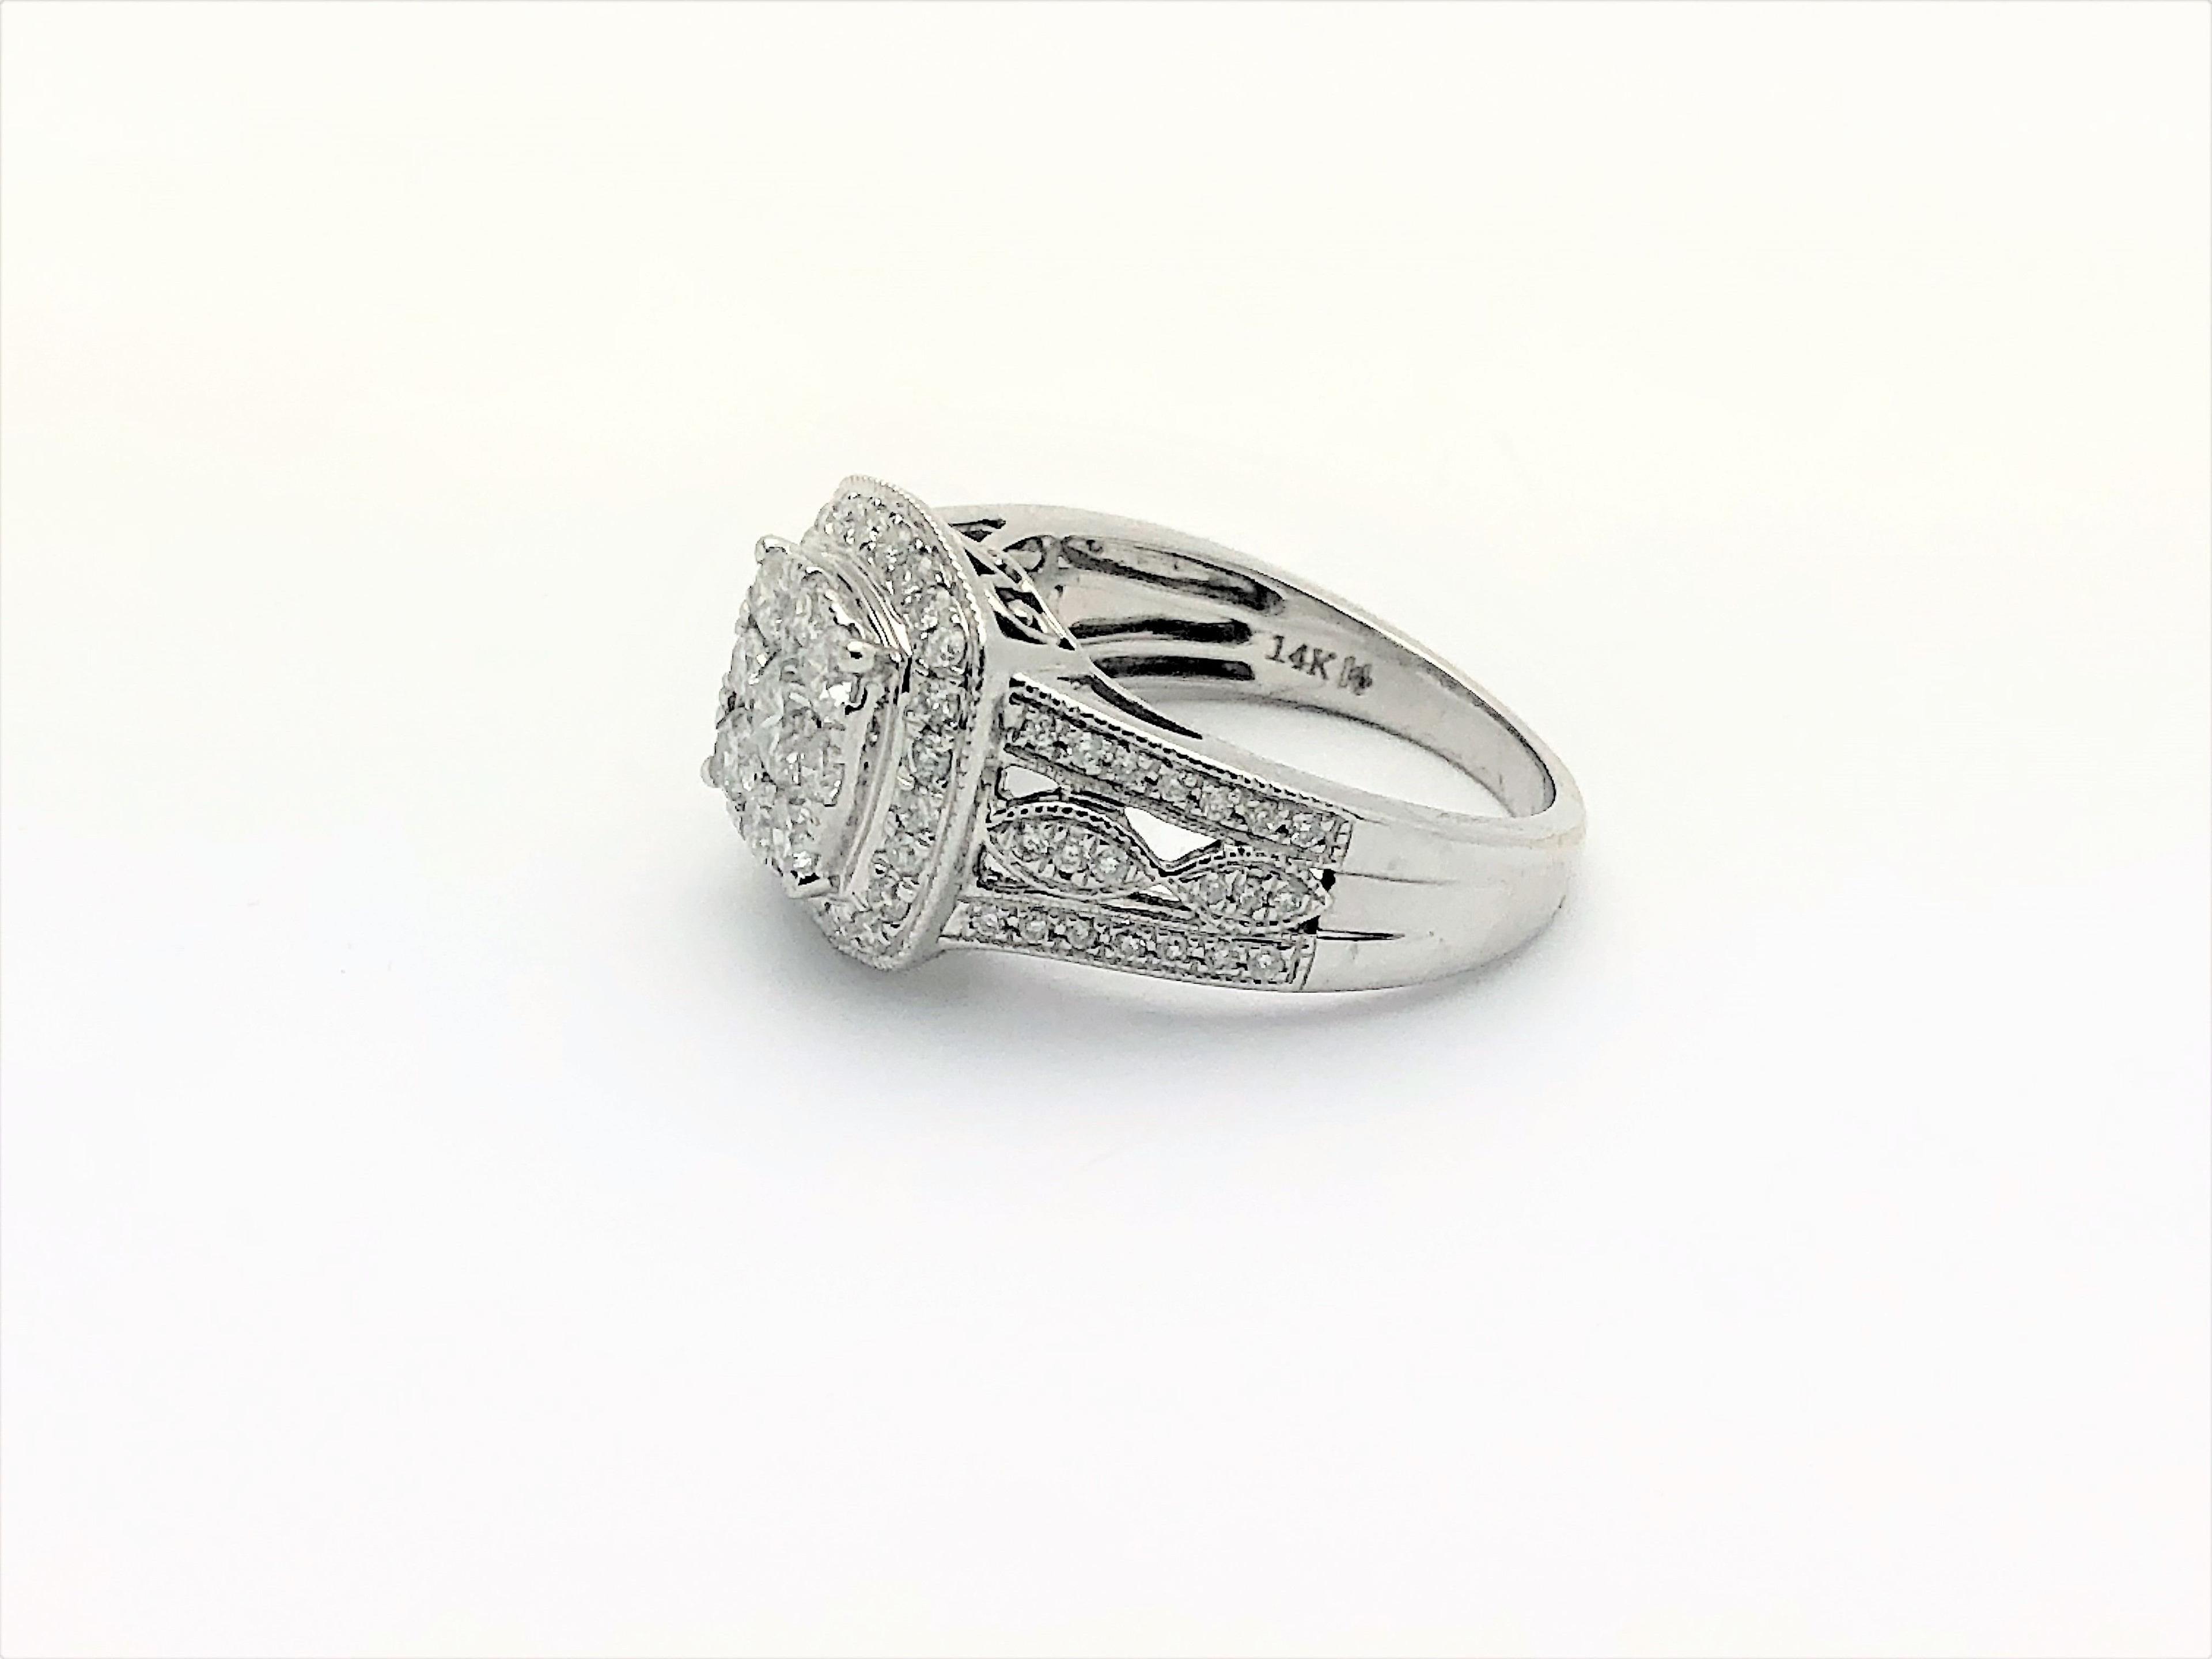 Stunning Ladies 14k White Gold Cluster Diamond Ring